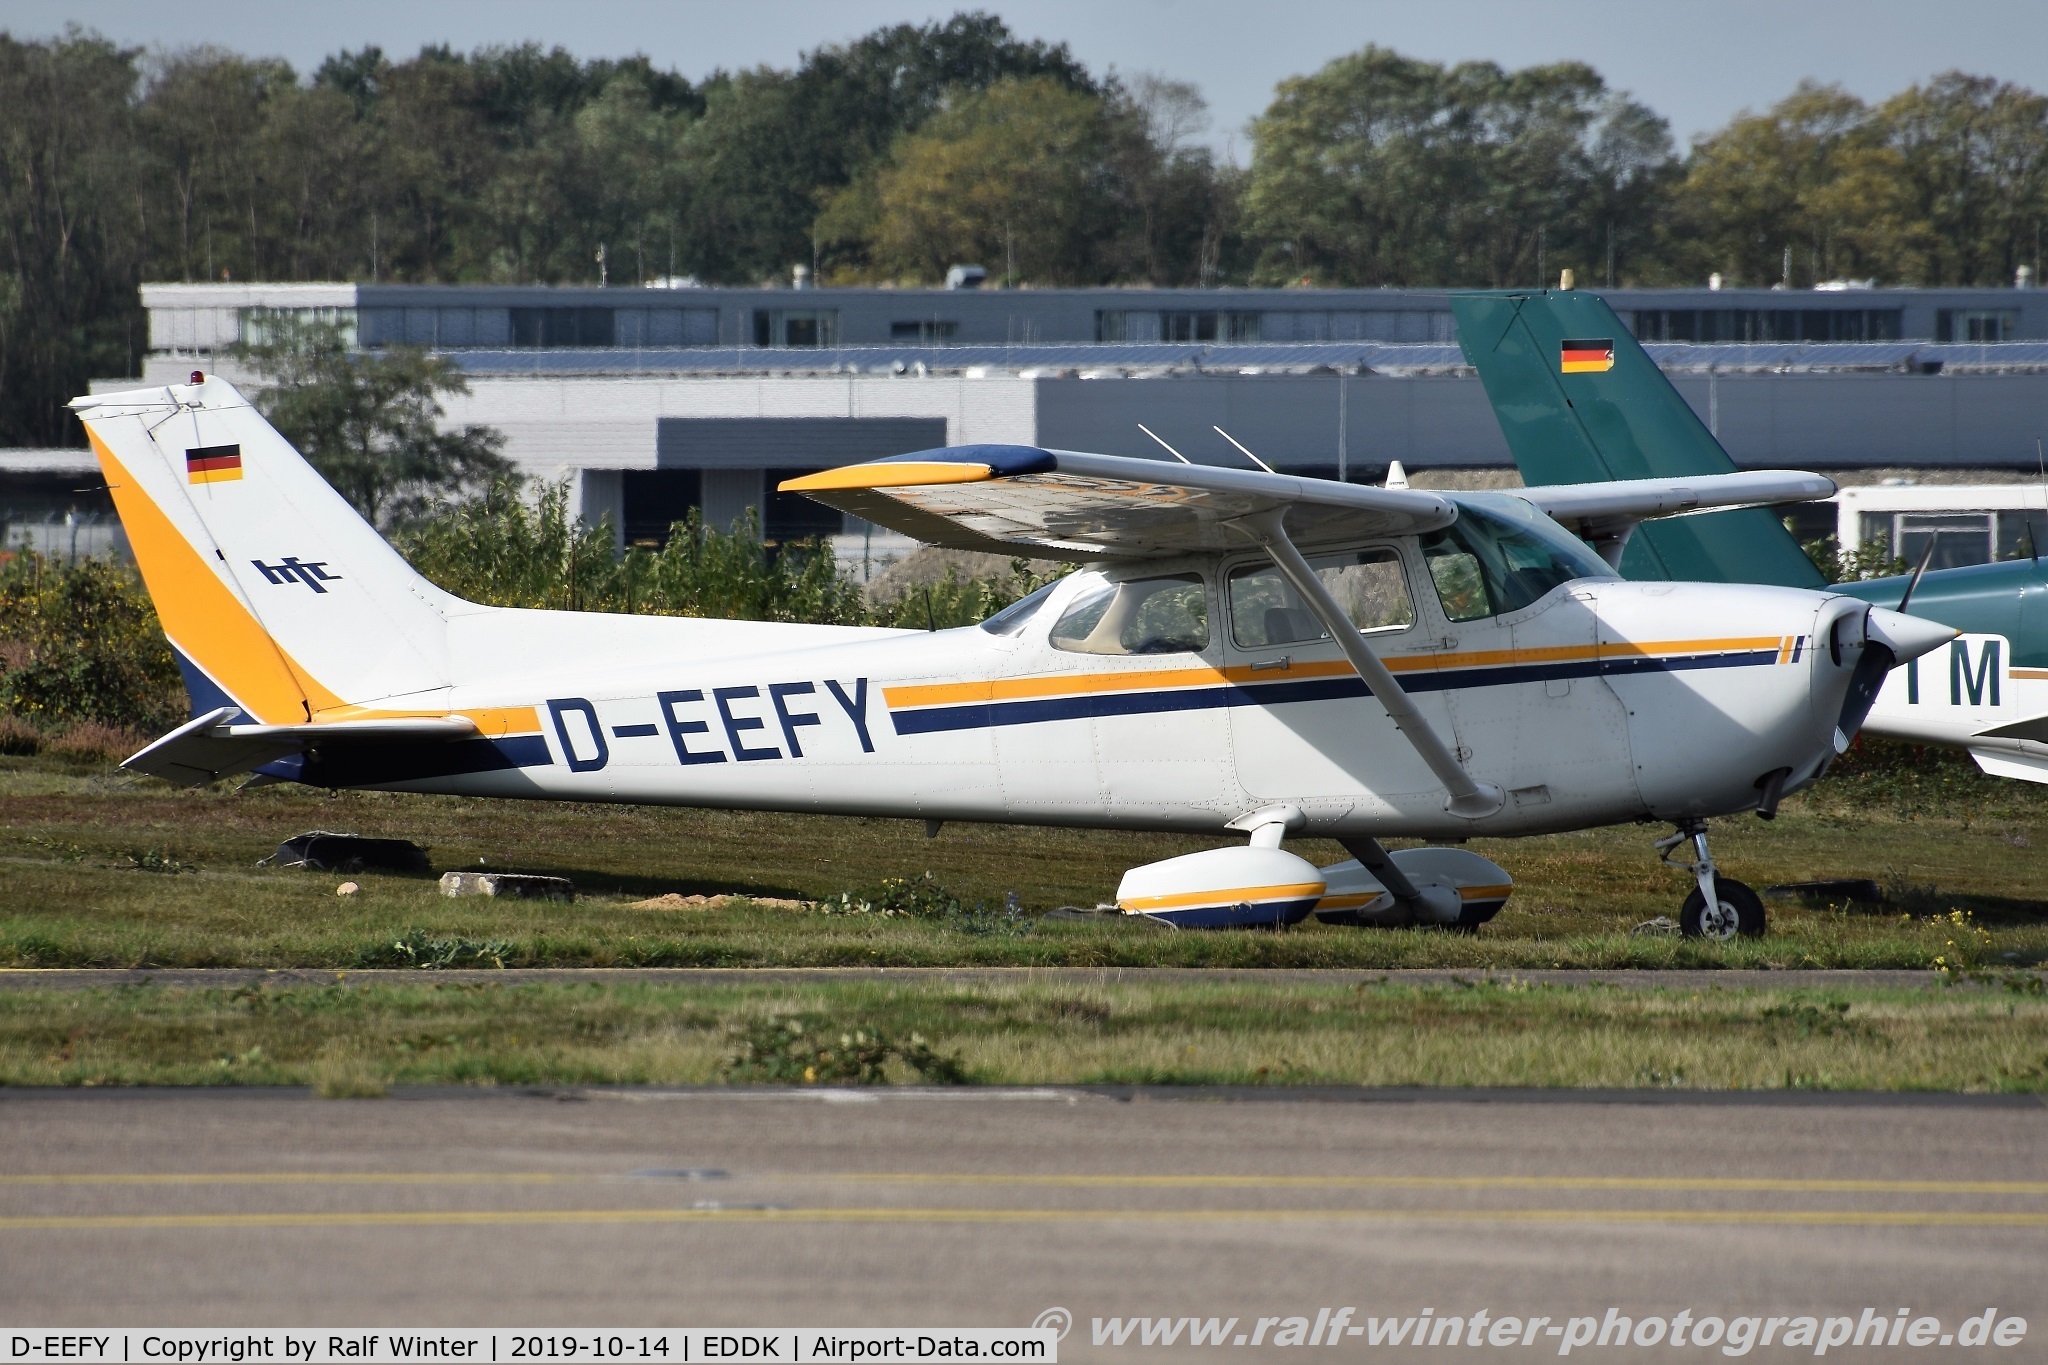 D-EEFY, 1984 Reims F172P C/N F17202229, Reims F172P Skyhak II - HFC Hanseatischer Fliegerclub Frankfurt - F17202229 - D-EEFY - 14.10.2019 - CGN